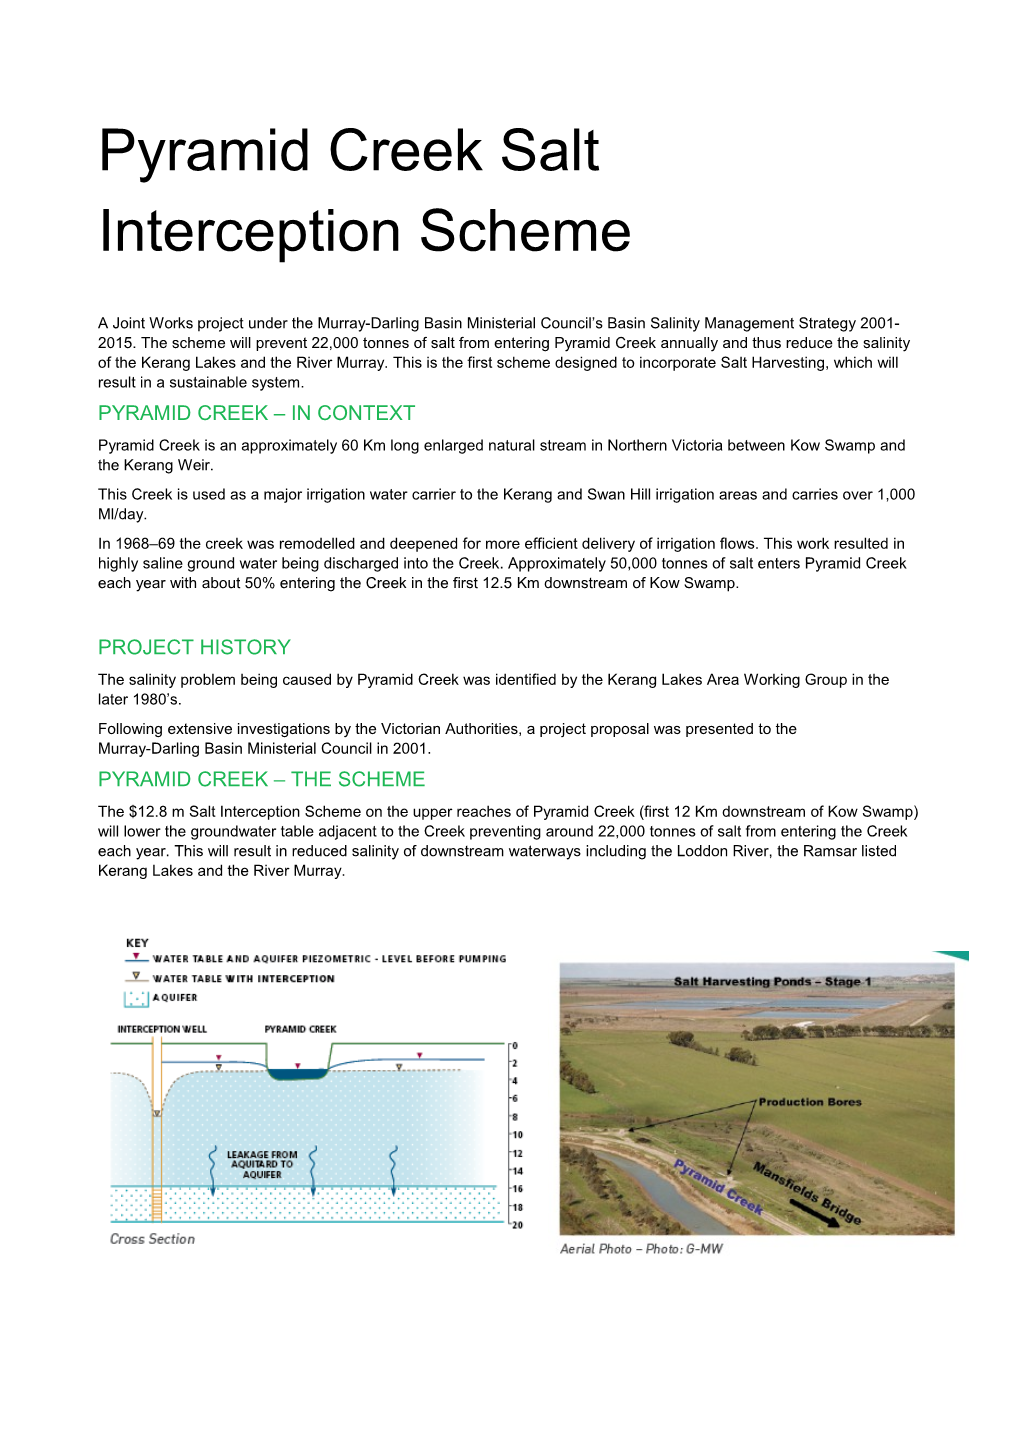 Pyramid Creek Salt Interception Scheme